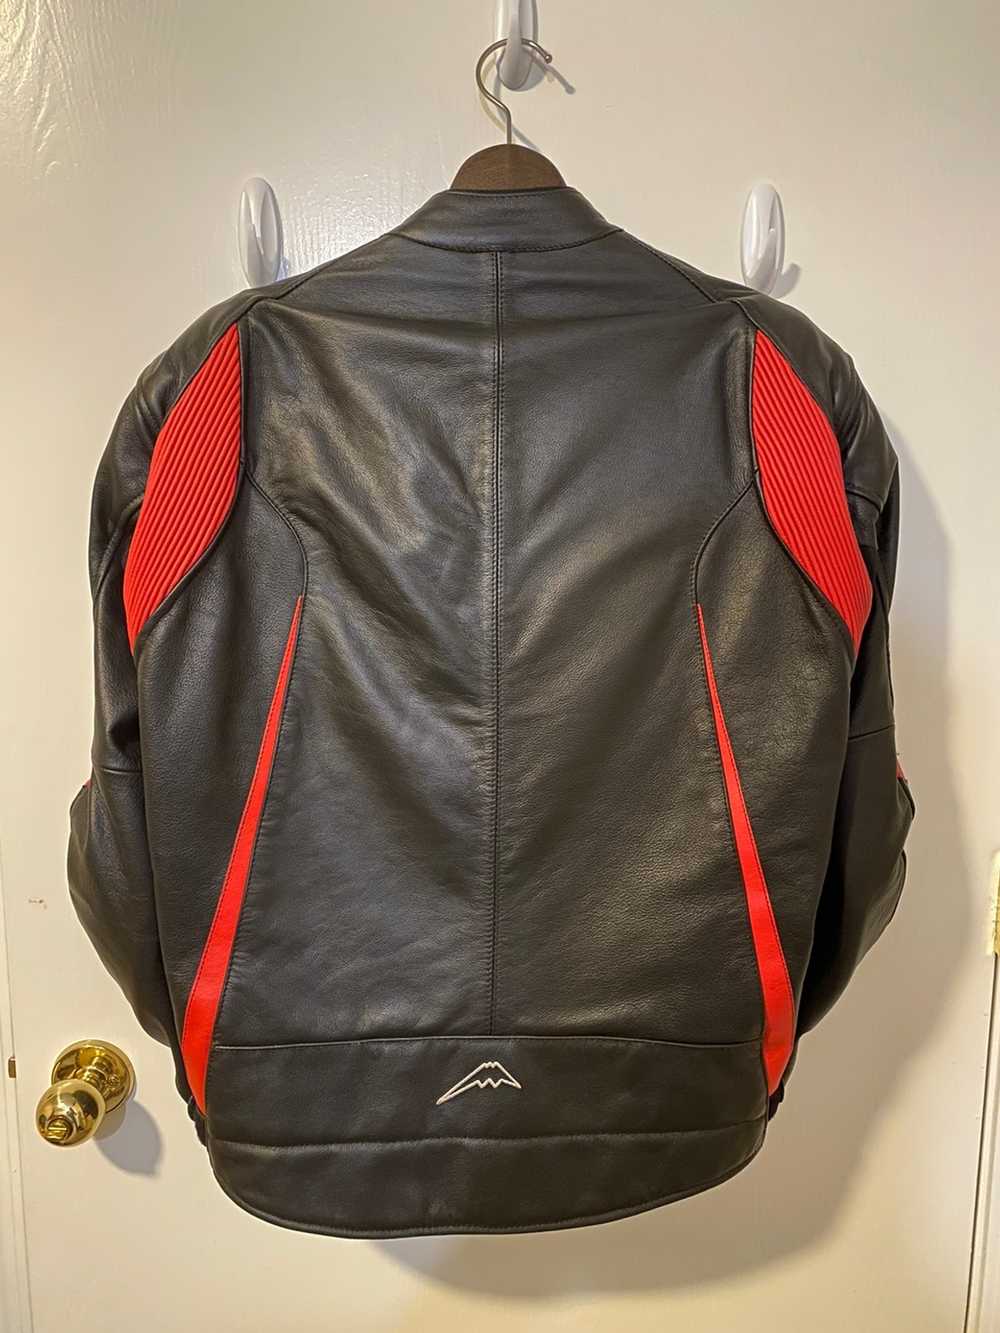 Japanese Brand Kushitani motorcycle jacket - image 2